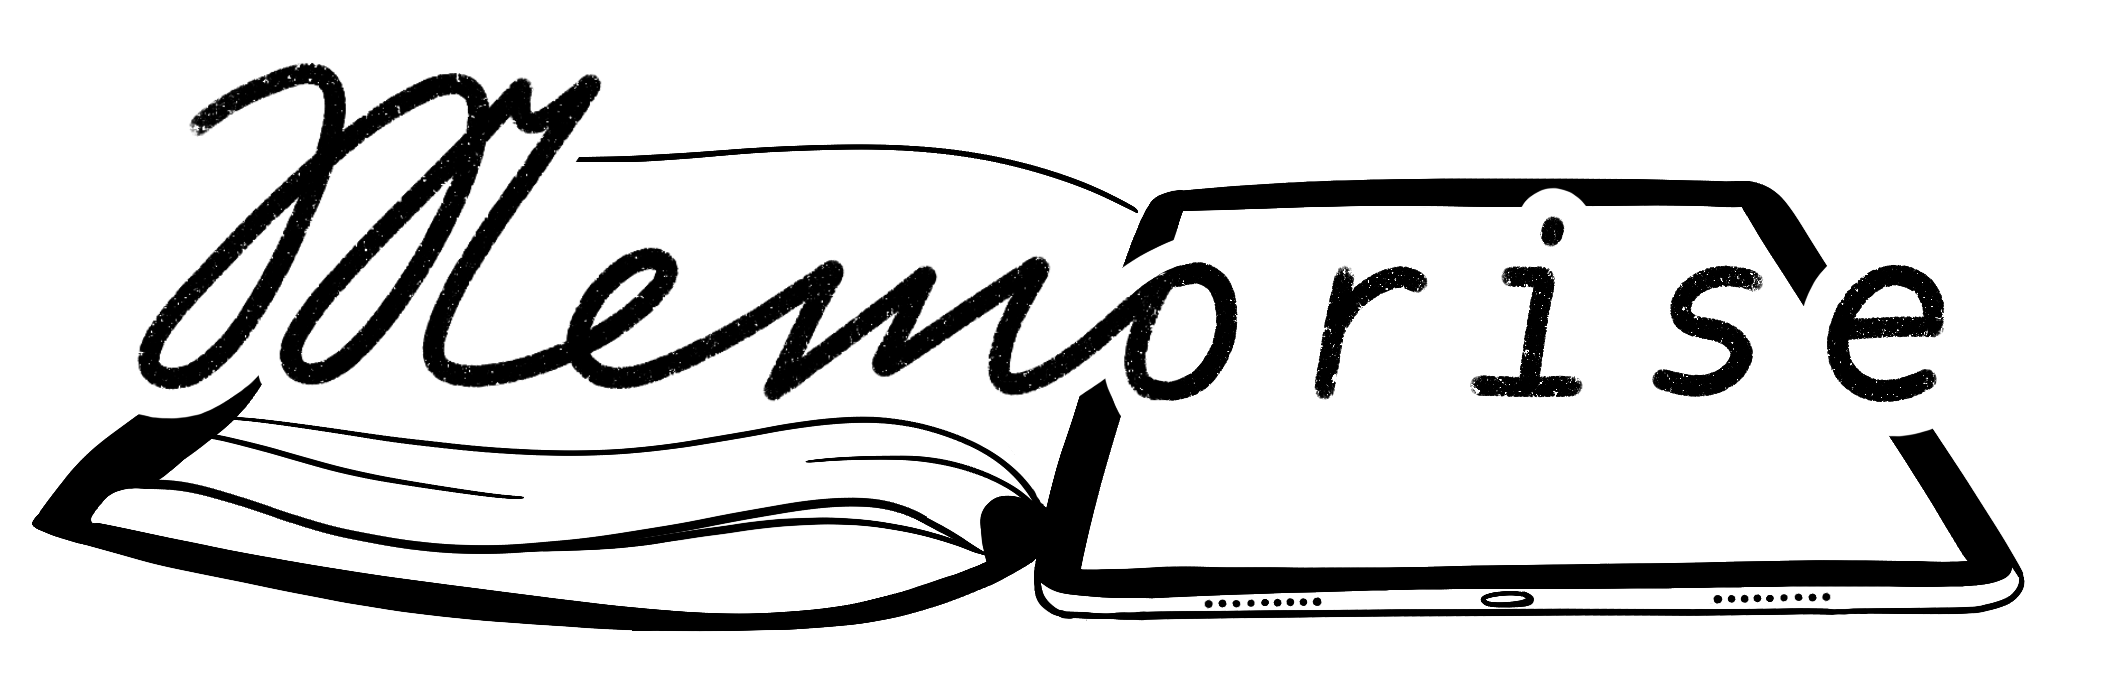 The logo of MEMORISE, links to the website of MEMORISE